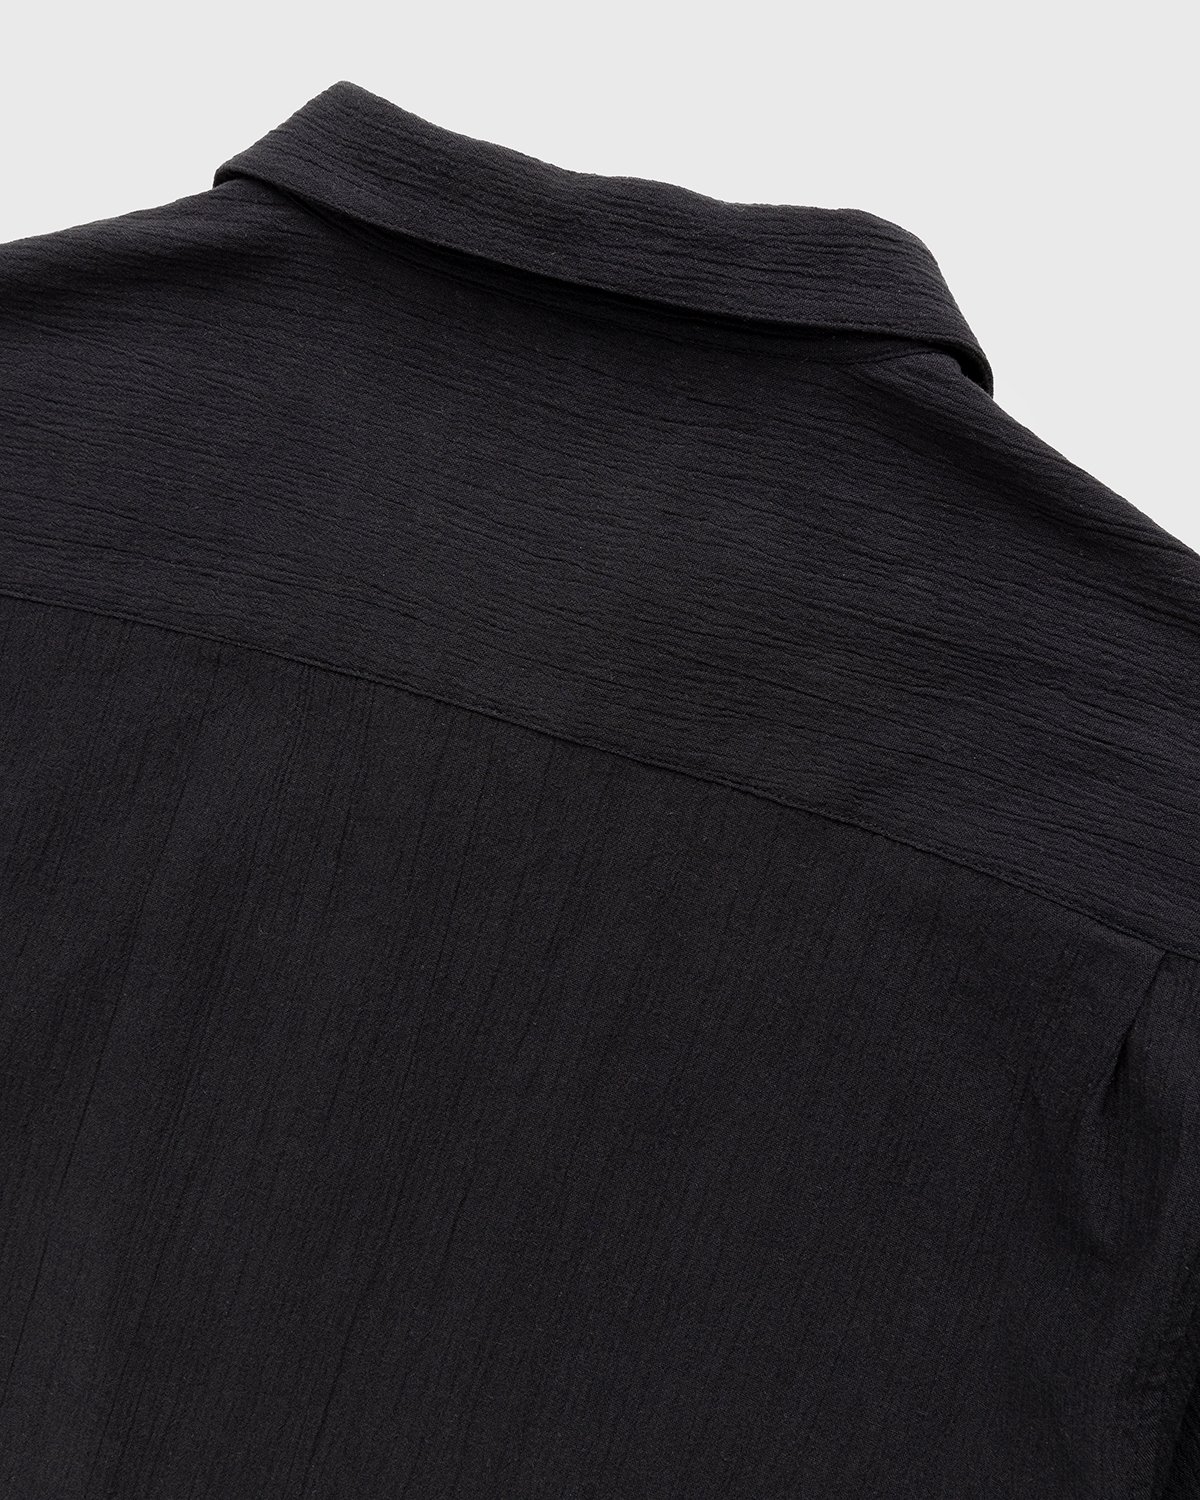 Highsnobiety - Crepe Short Sleeve Shirt Black - Clothing - Black - Image 3